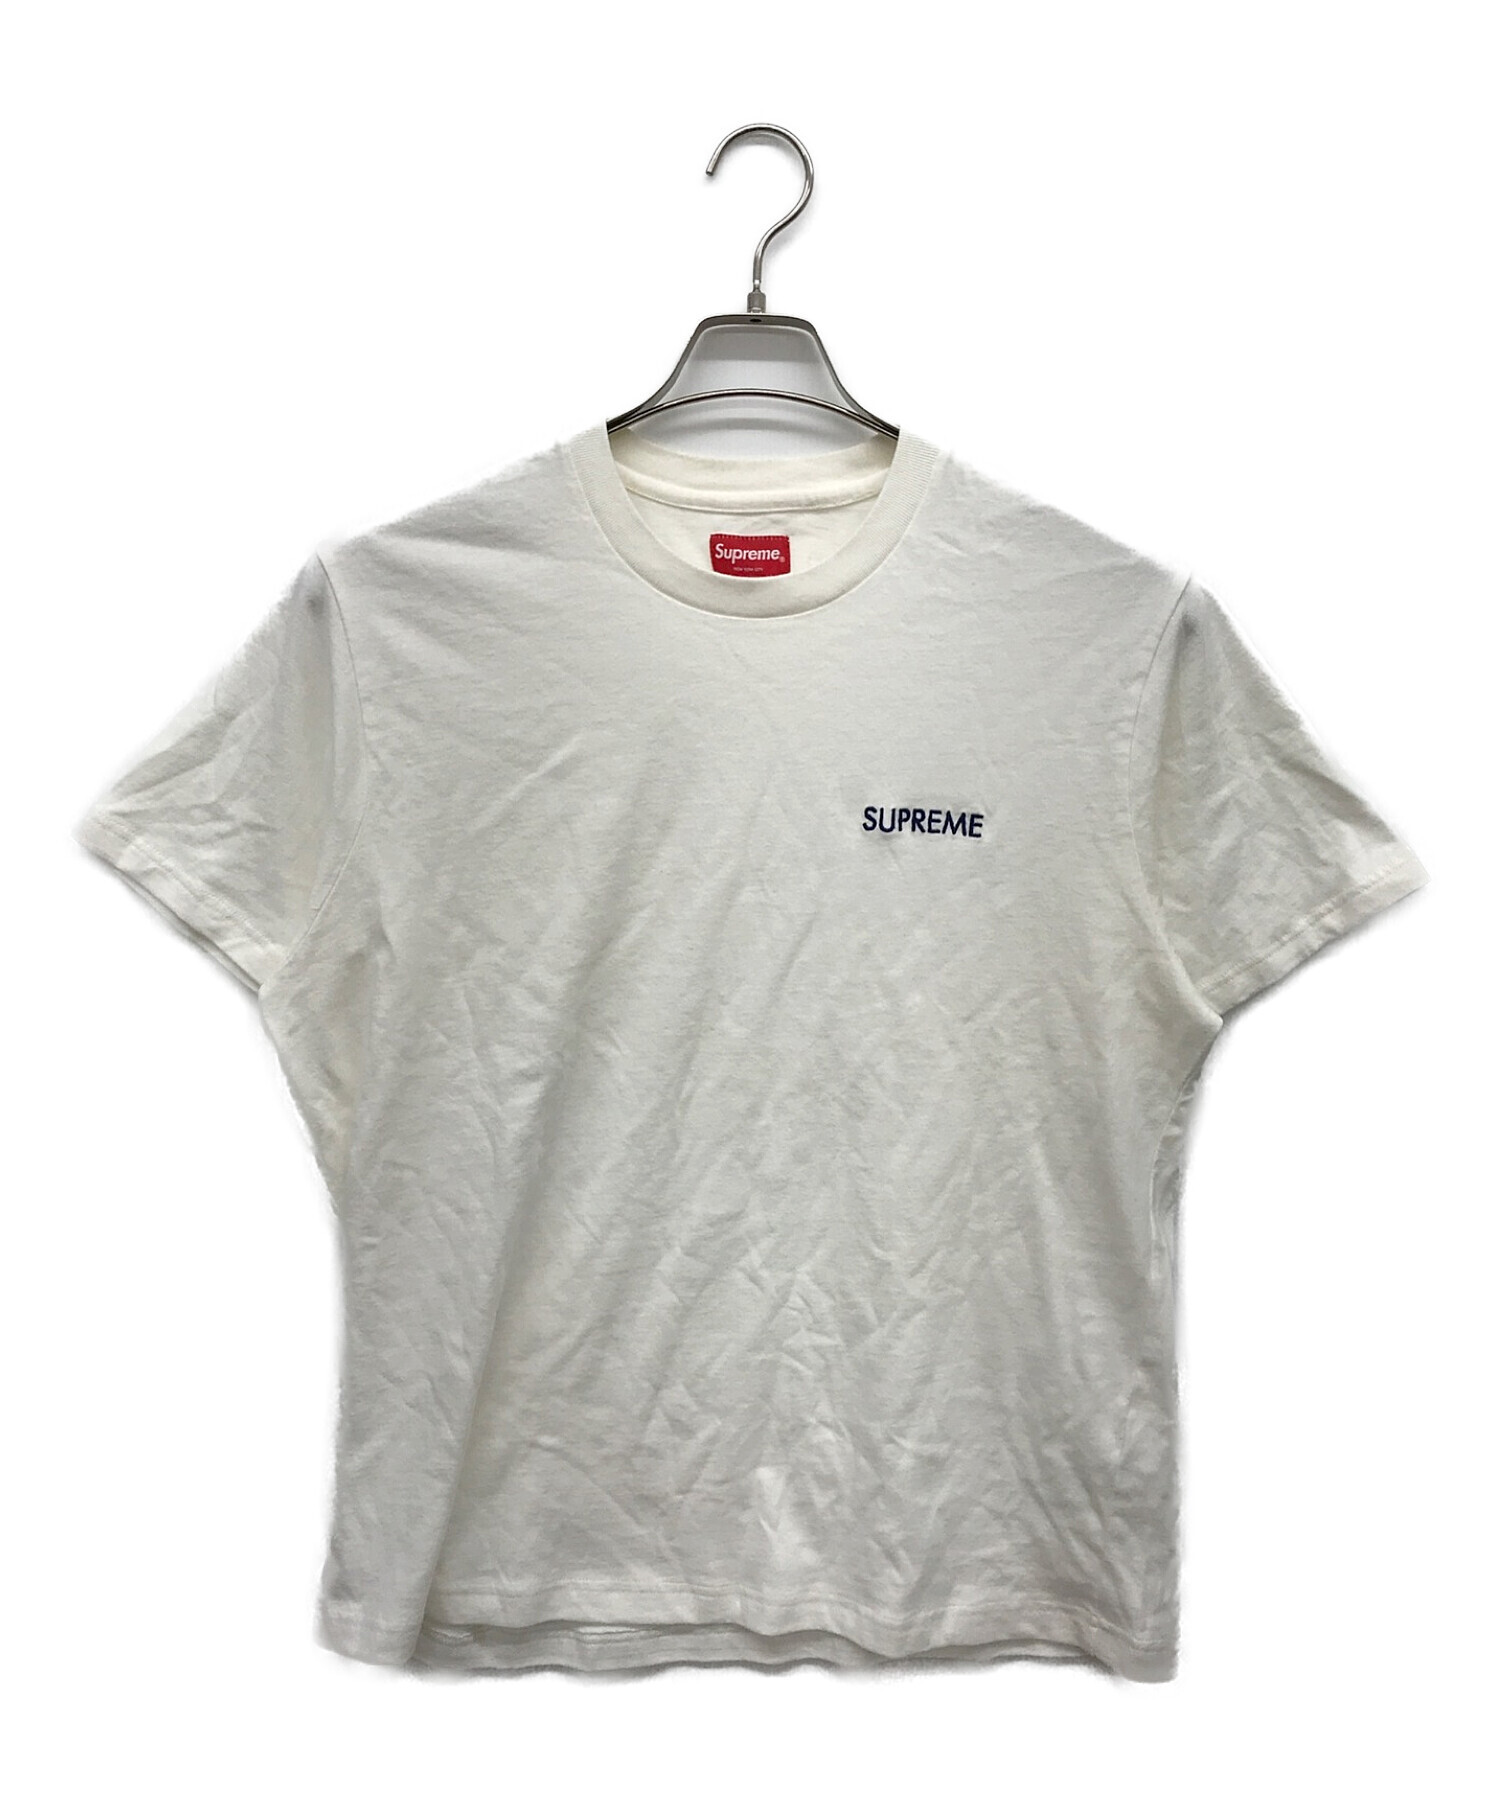 Supreme (シュプリーム) Tシャツ ホワイト サイズ:S